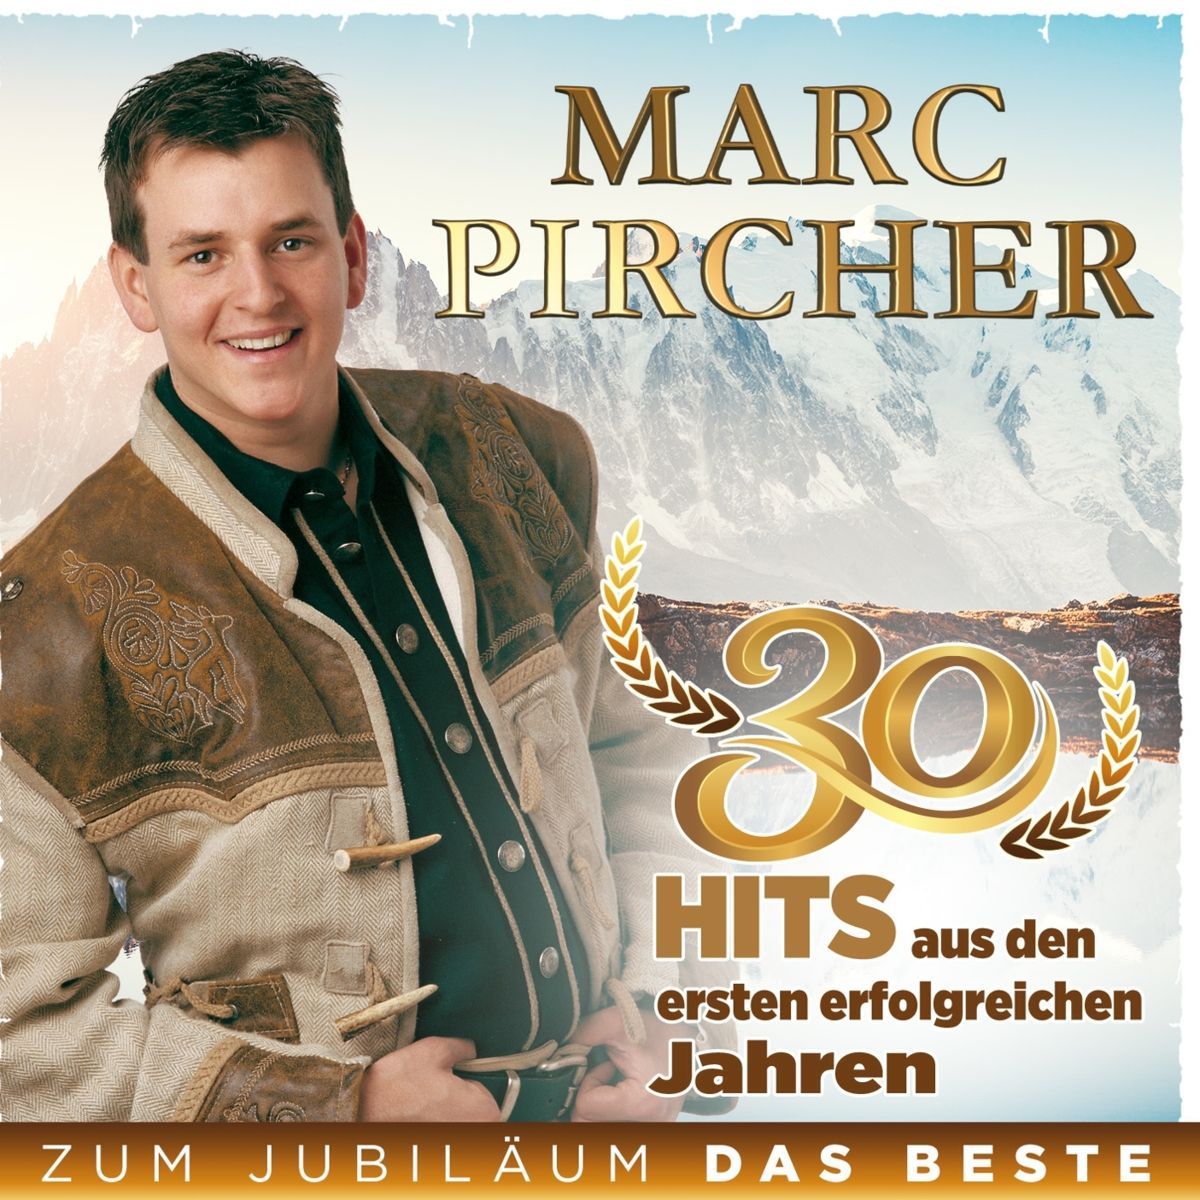 Marc Pircher - Zum Jubilläum das Beste - 30 Hits aus den ersten erfolgreichen Jahren (2022) 